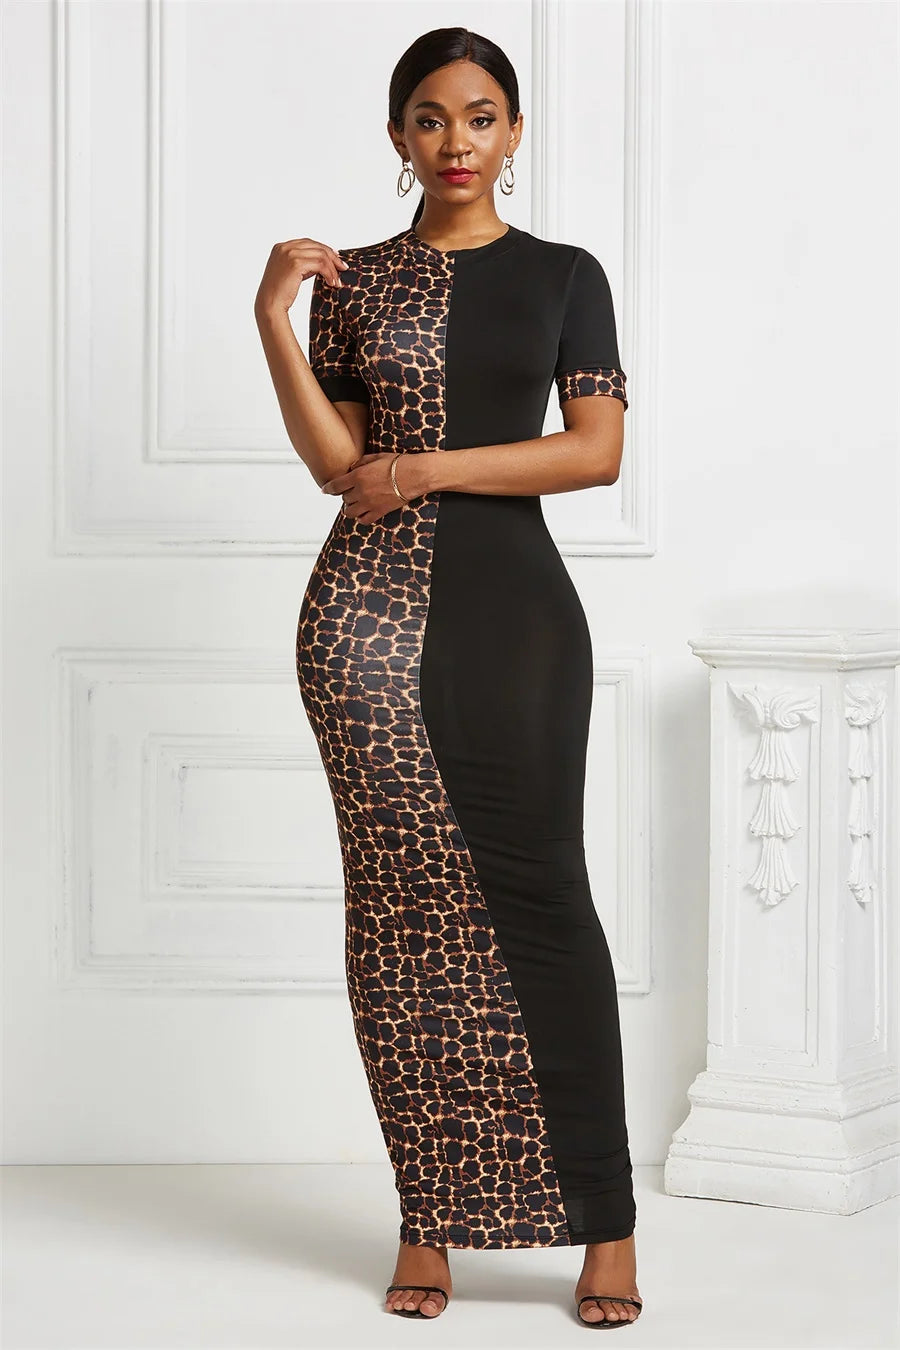 FZ Women's Leopard print Sexy Maxi Patchwork Bodycon Dress - FZwear